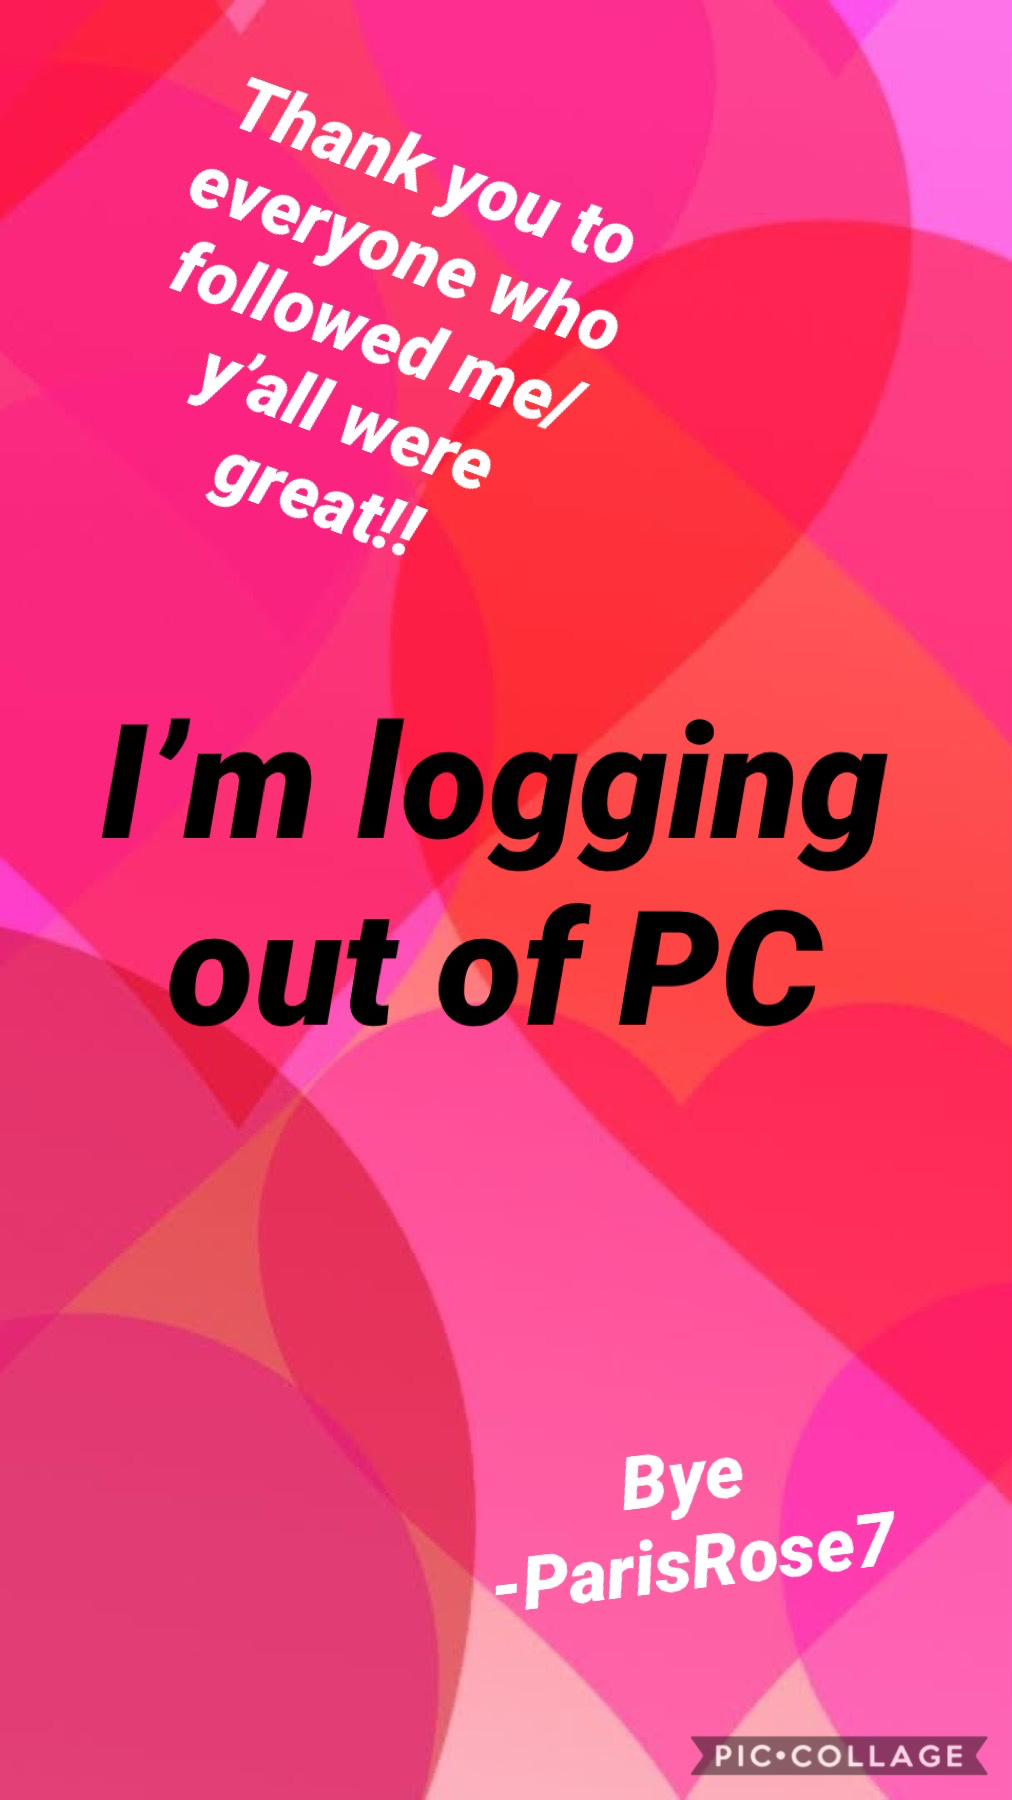 I’m logging out